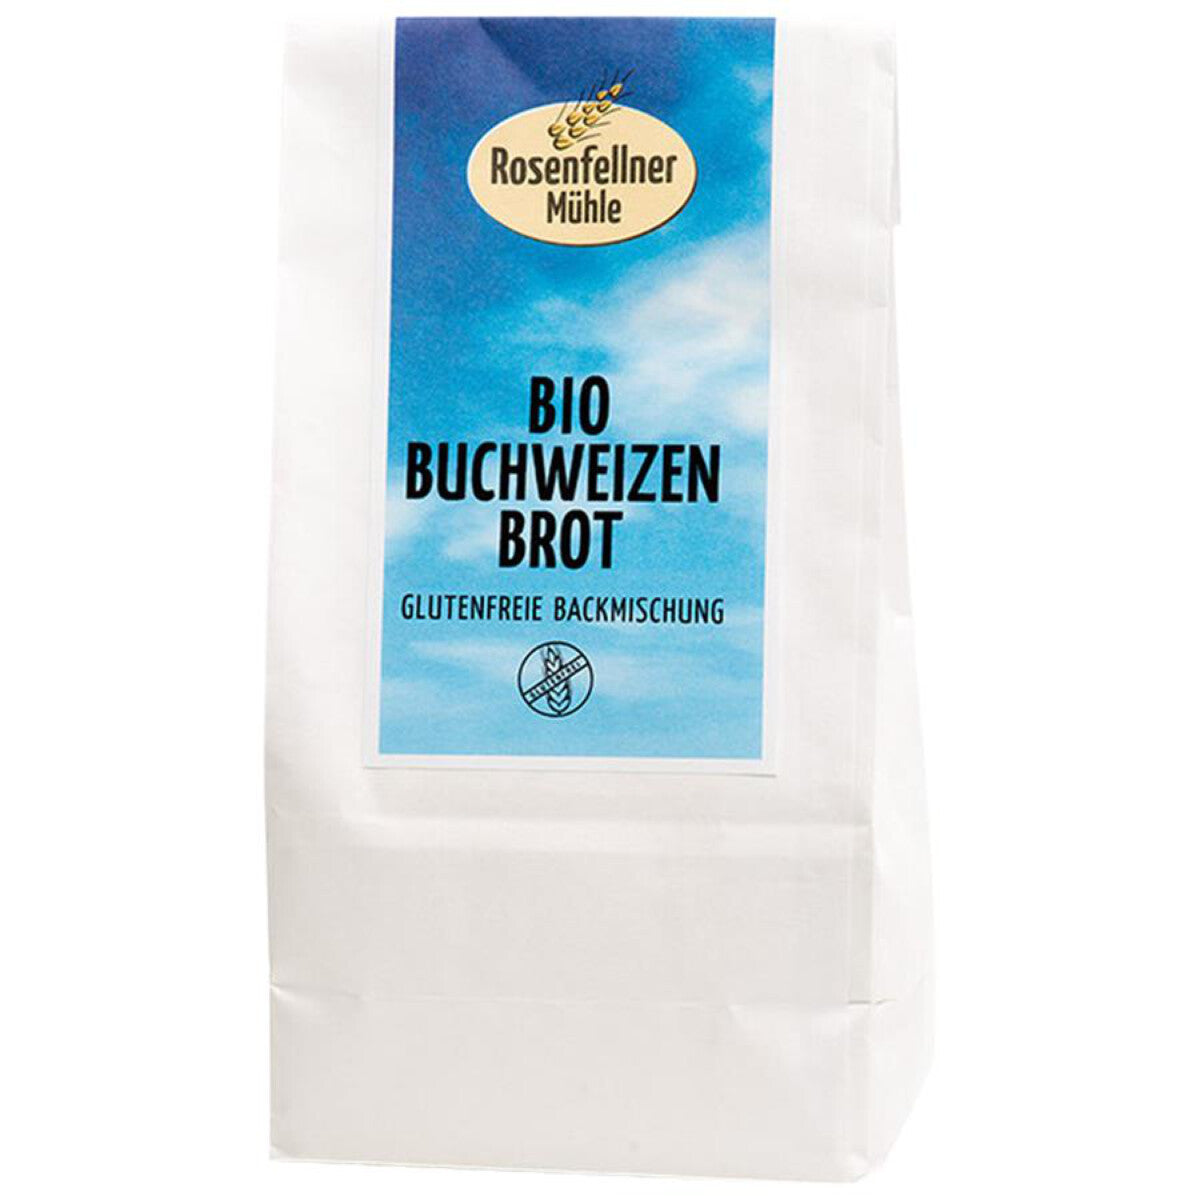 ROSENFELLNER Buchweizenbrot Backmischung glutenfrei - 500 g